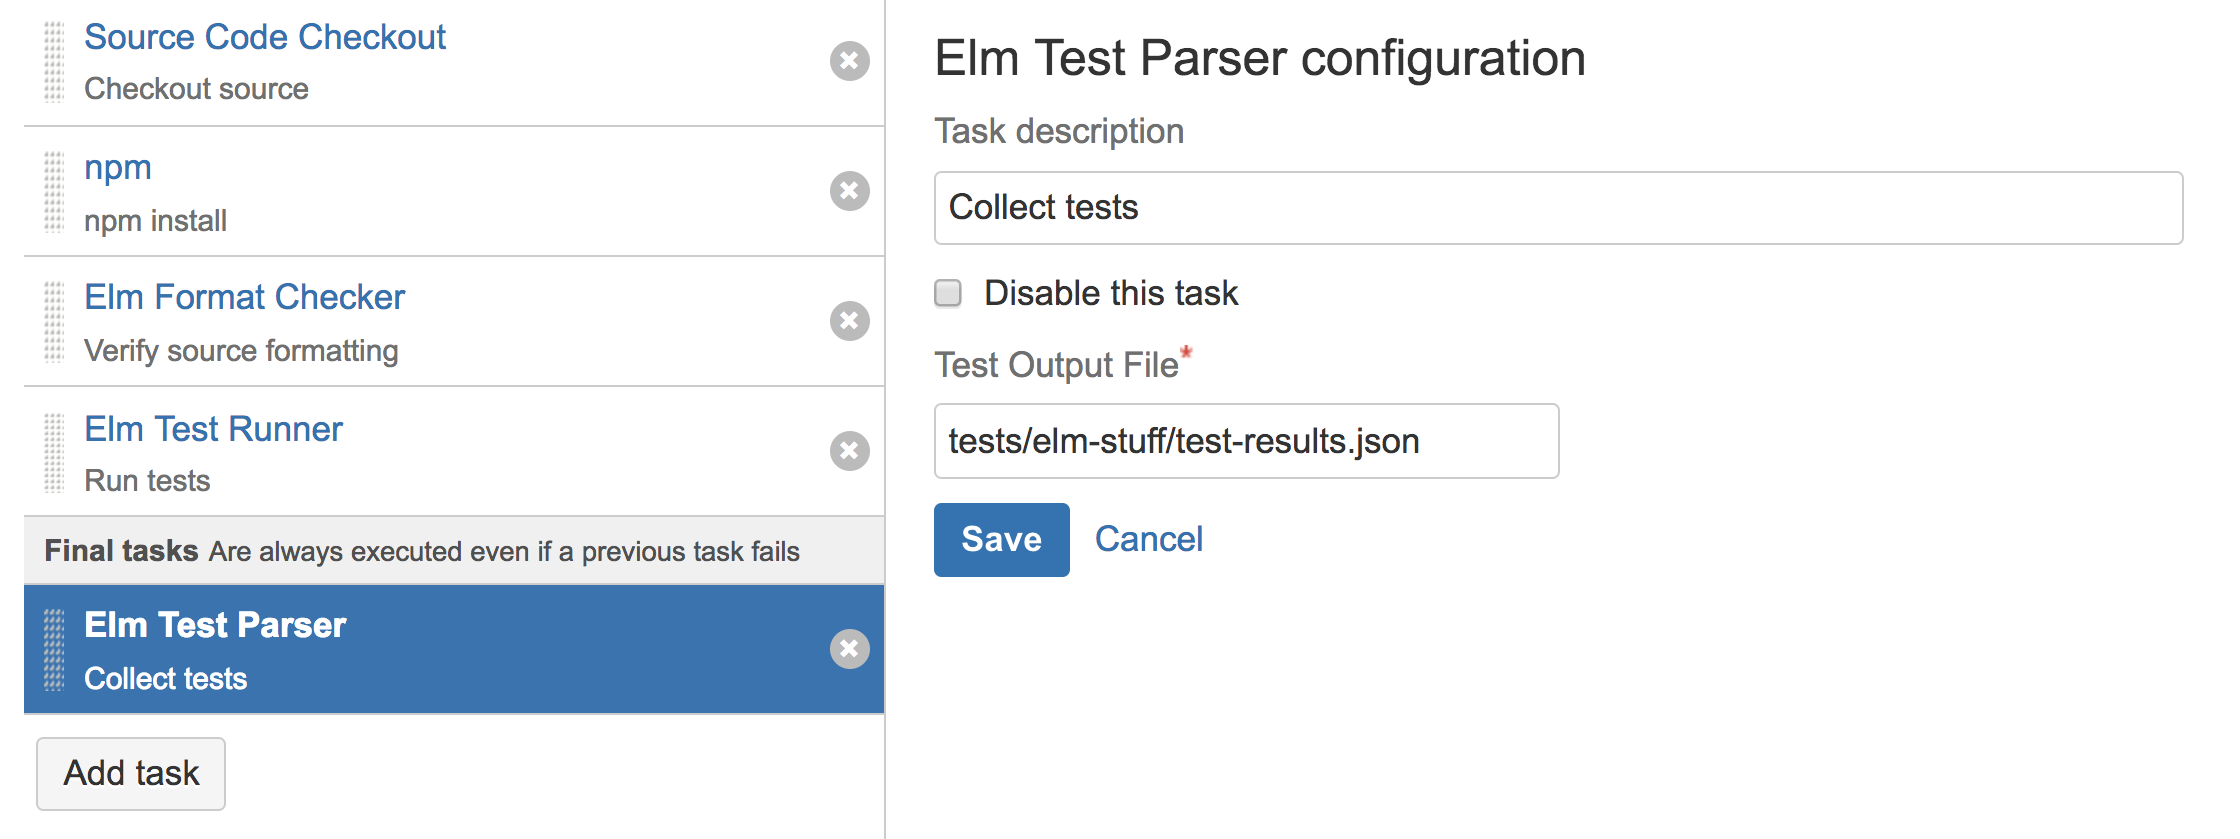 Sample Elm Test Parser Task